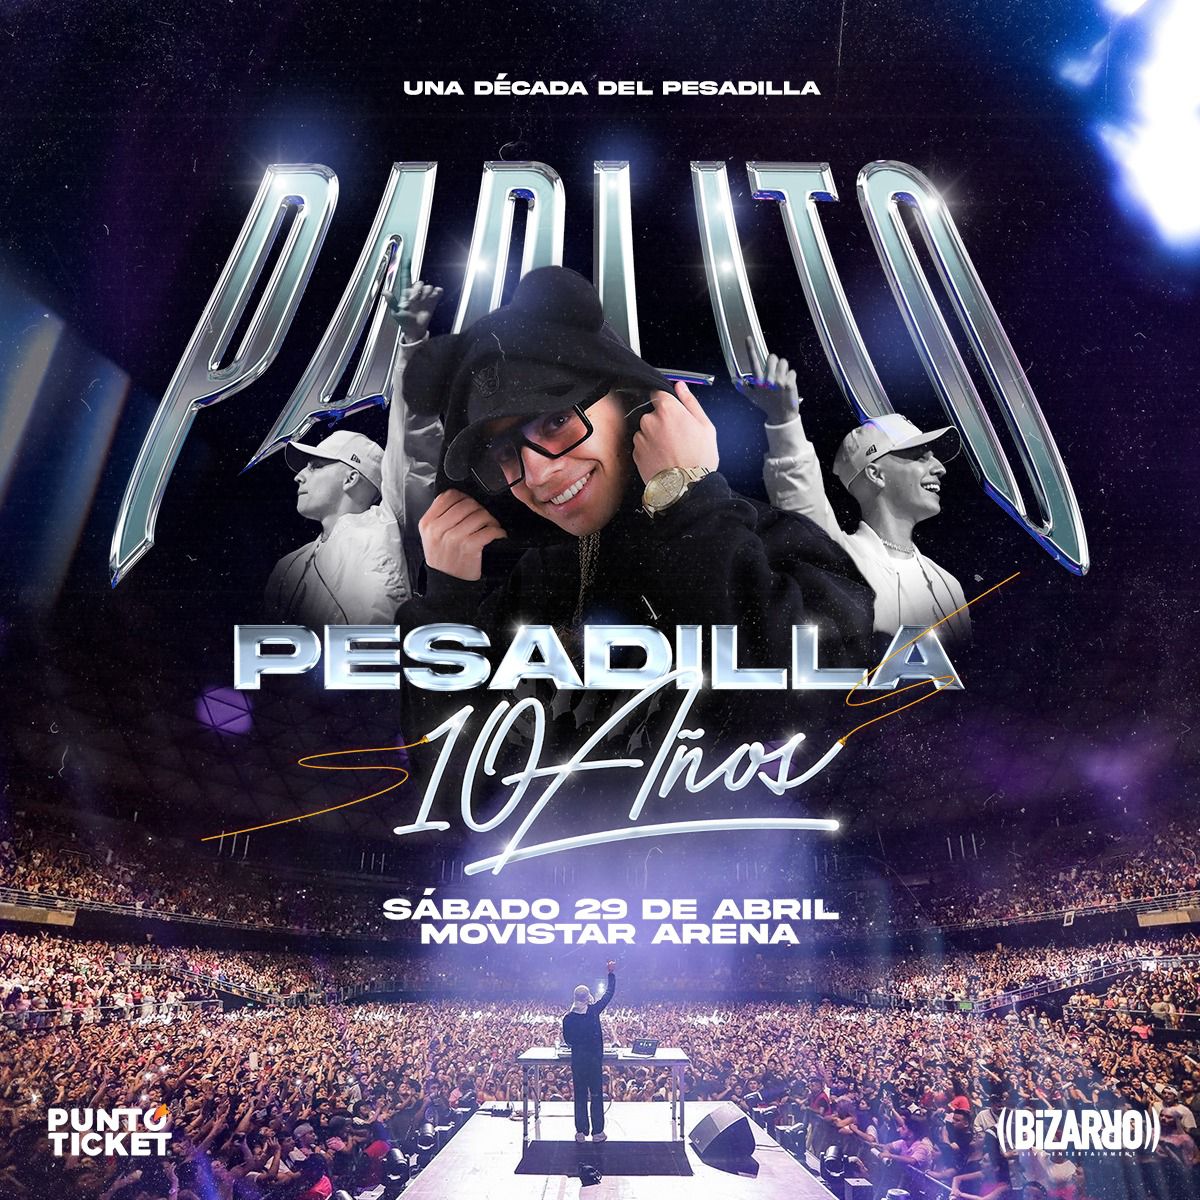 Pablito Pesadilla anuncia su primer concierto en Movistar Arena